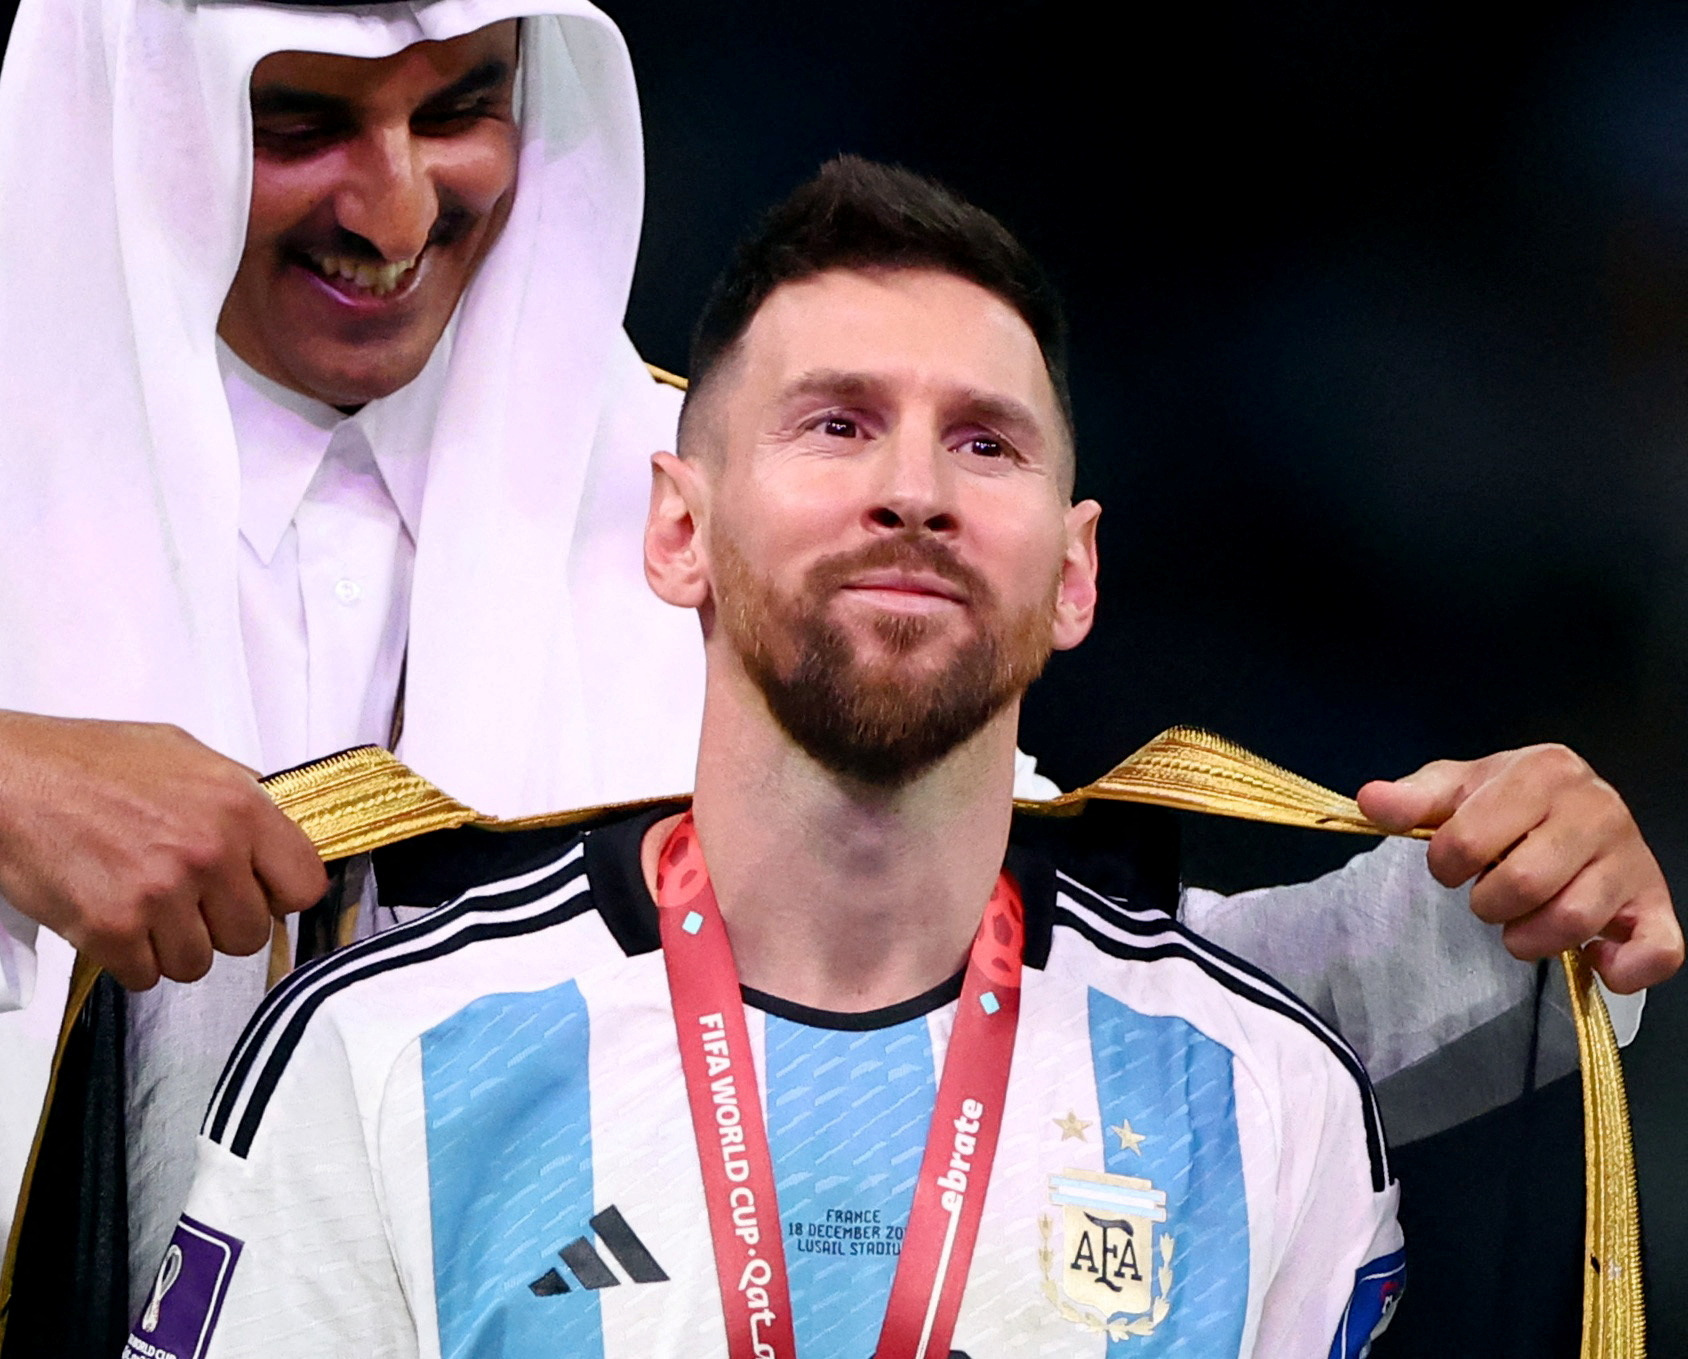 Hãy cùng đón xem hình ảnh về Messi và chiếc áo choàng trắng ngà được trao cho anh sau một trận đấu hoàn hảo. Quảng cáo này chắc chắn sẽ khiến cho các fan Barca như một lời khuyên rằng họ không thể bỏ qua hình ảnh đáng nhớ này.